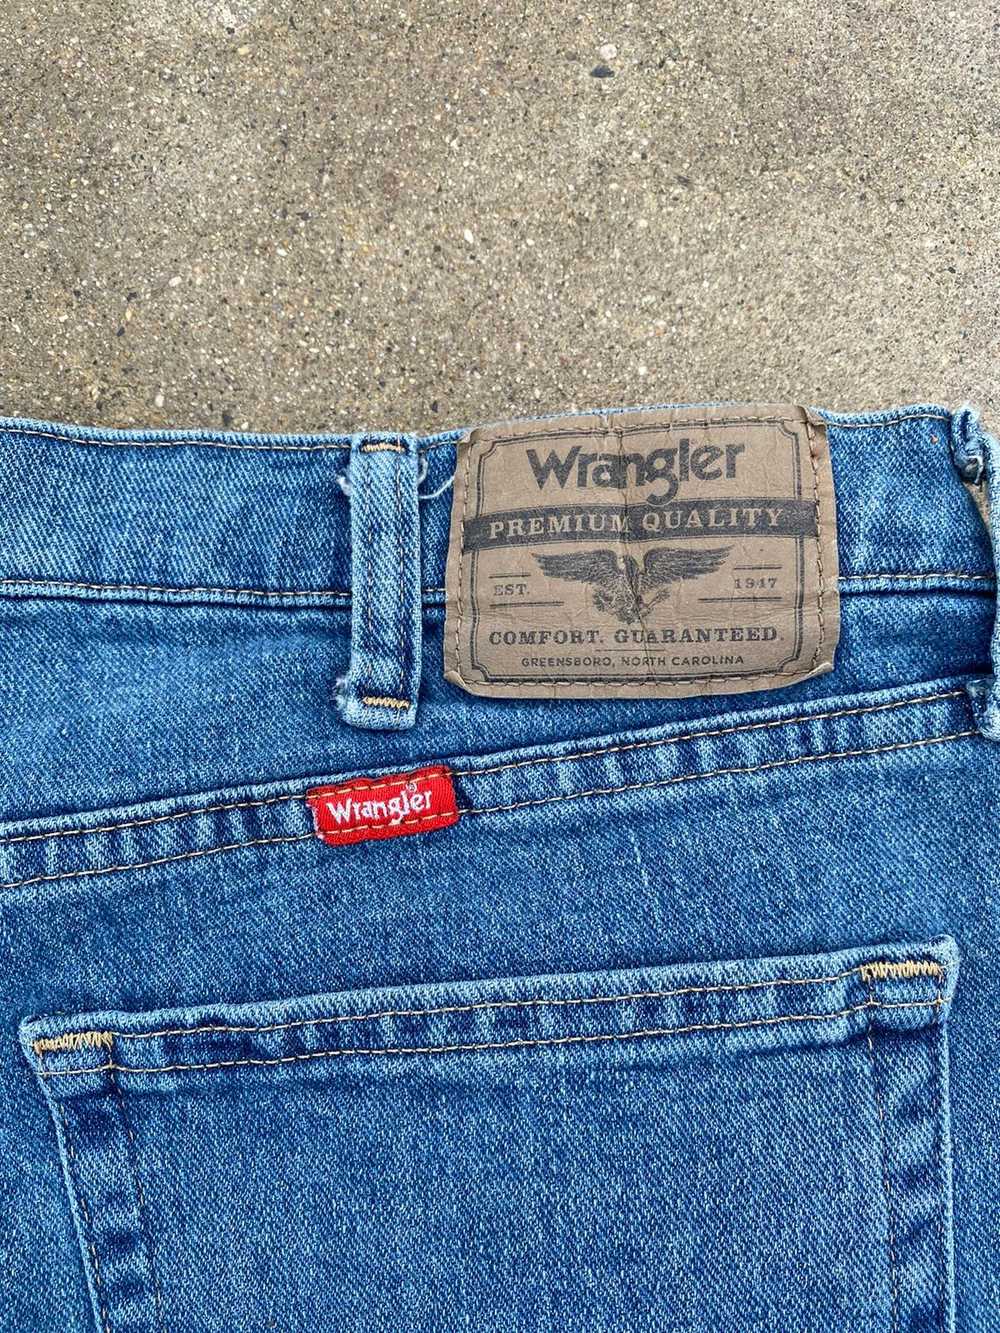 Vintage × Wrangler Vintage wrangler shorts - image 5